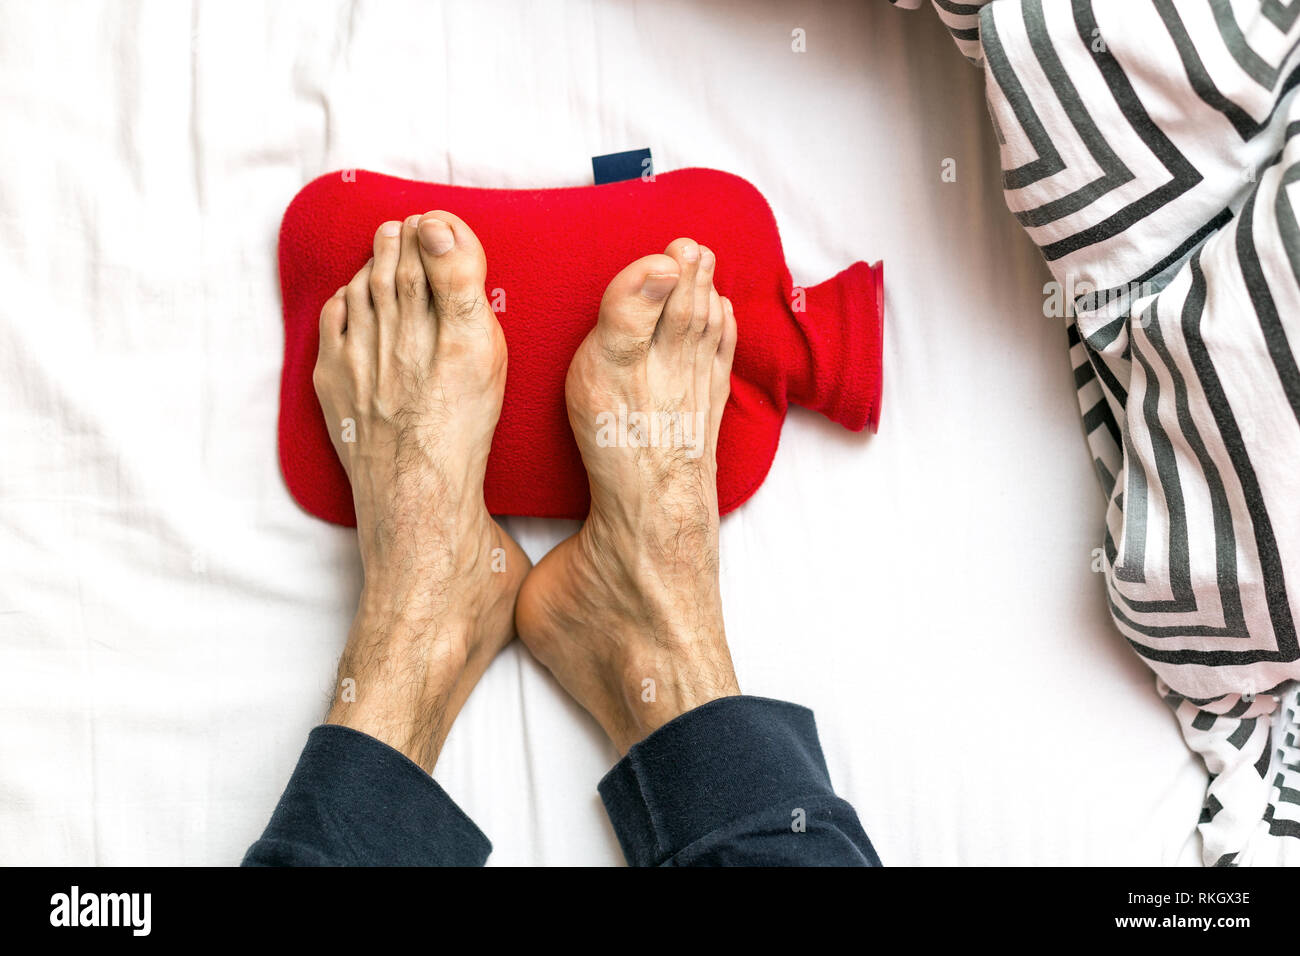 Uomo con i piedi freddi a letto su un red hot acqua in bottiglia. Il  riscaldamento dei piedi freddi Foto stock - Alamy